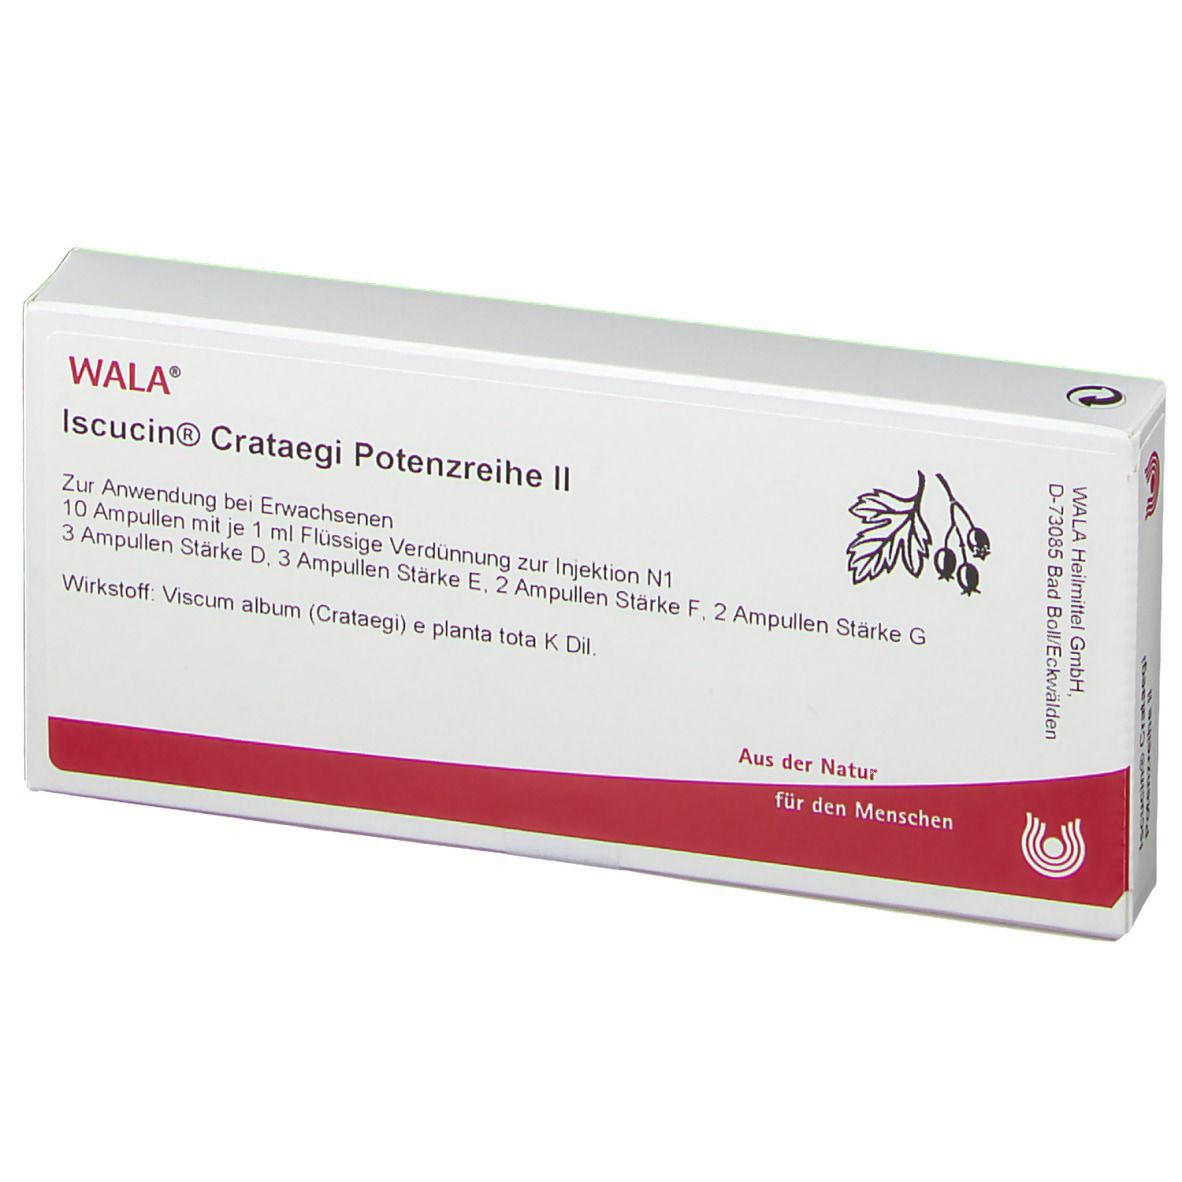 WALA® Iscucin Crataegi Potenzreihe Ii Ampullen